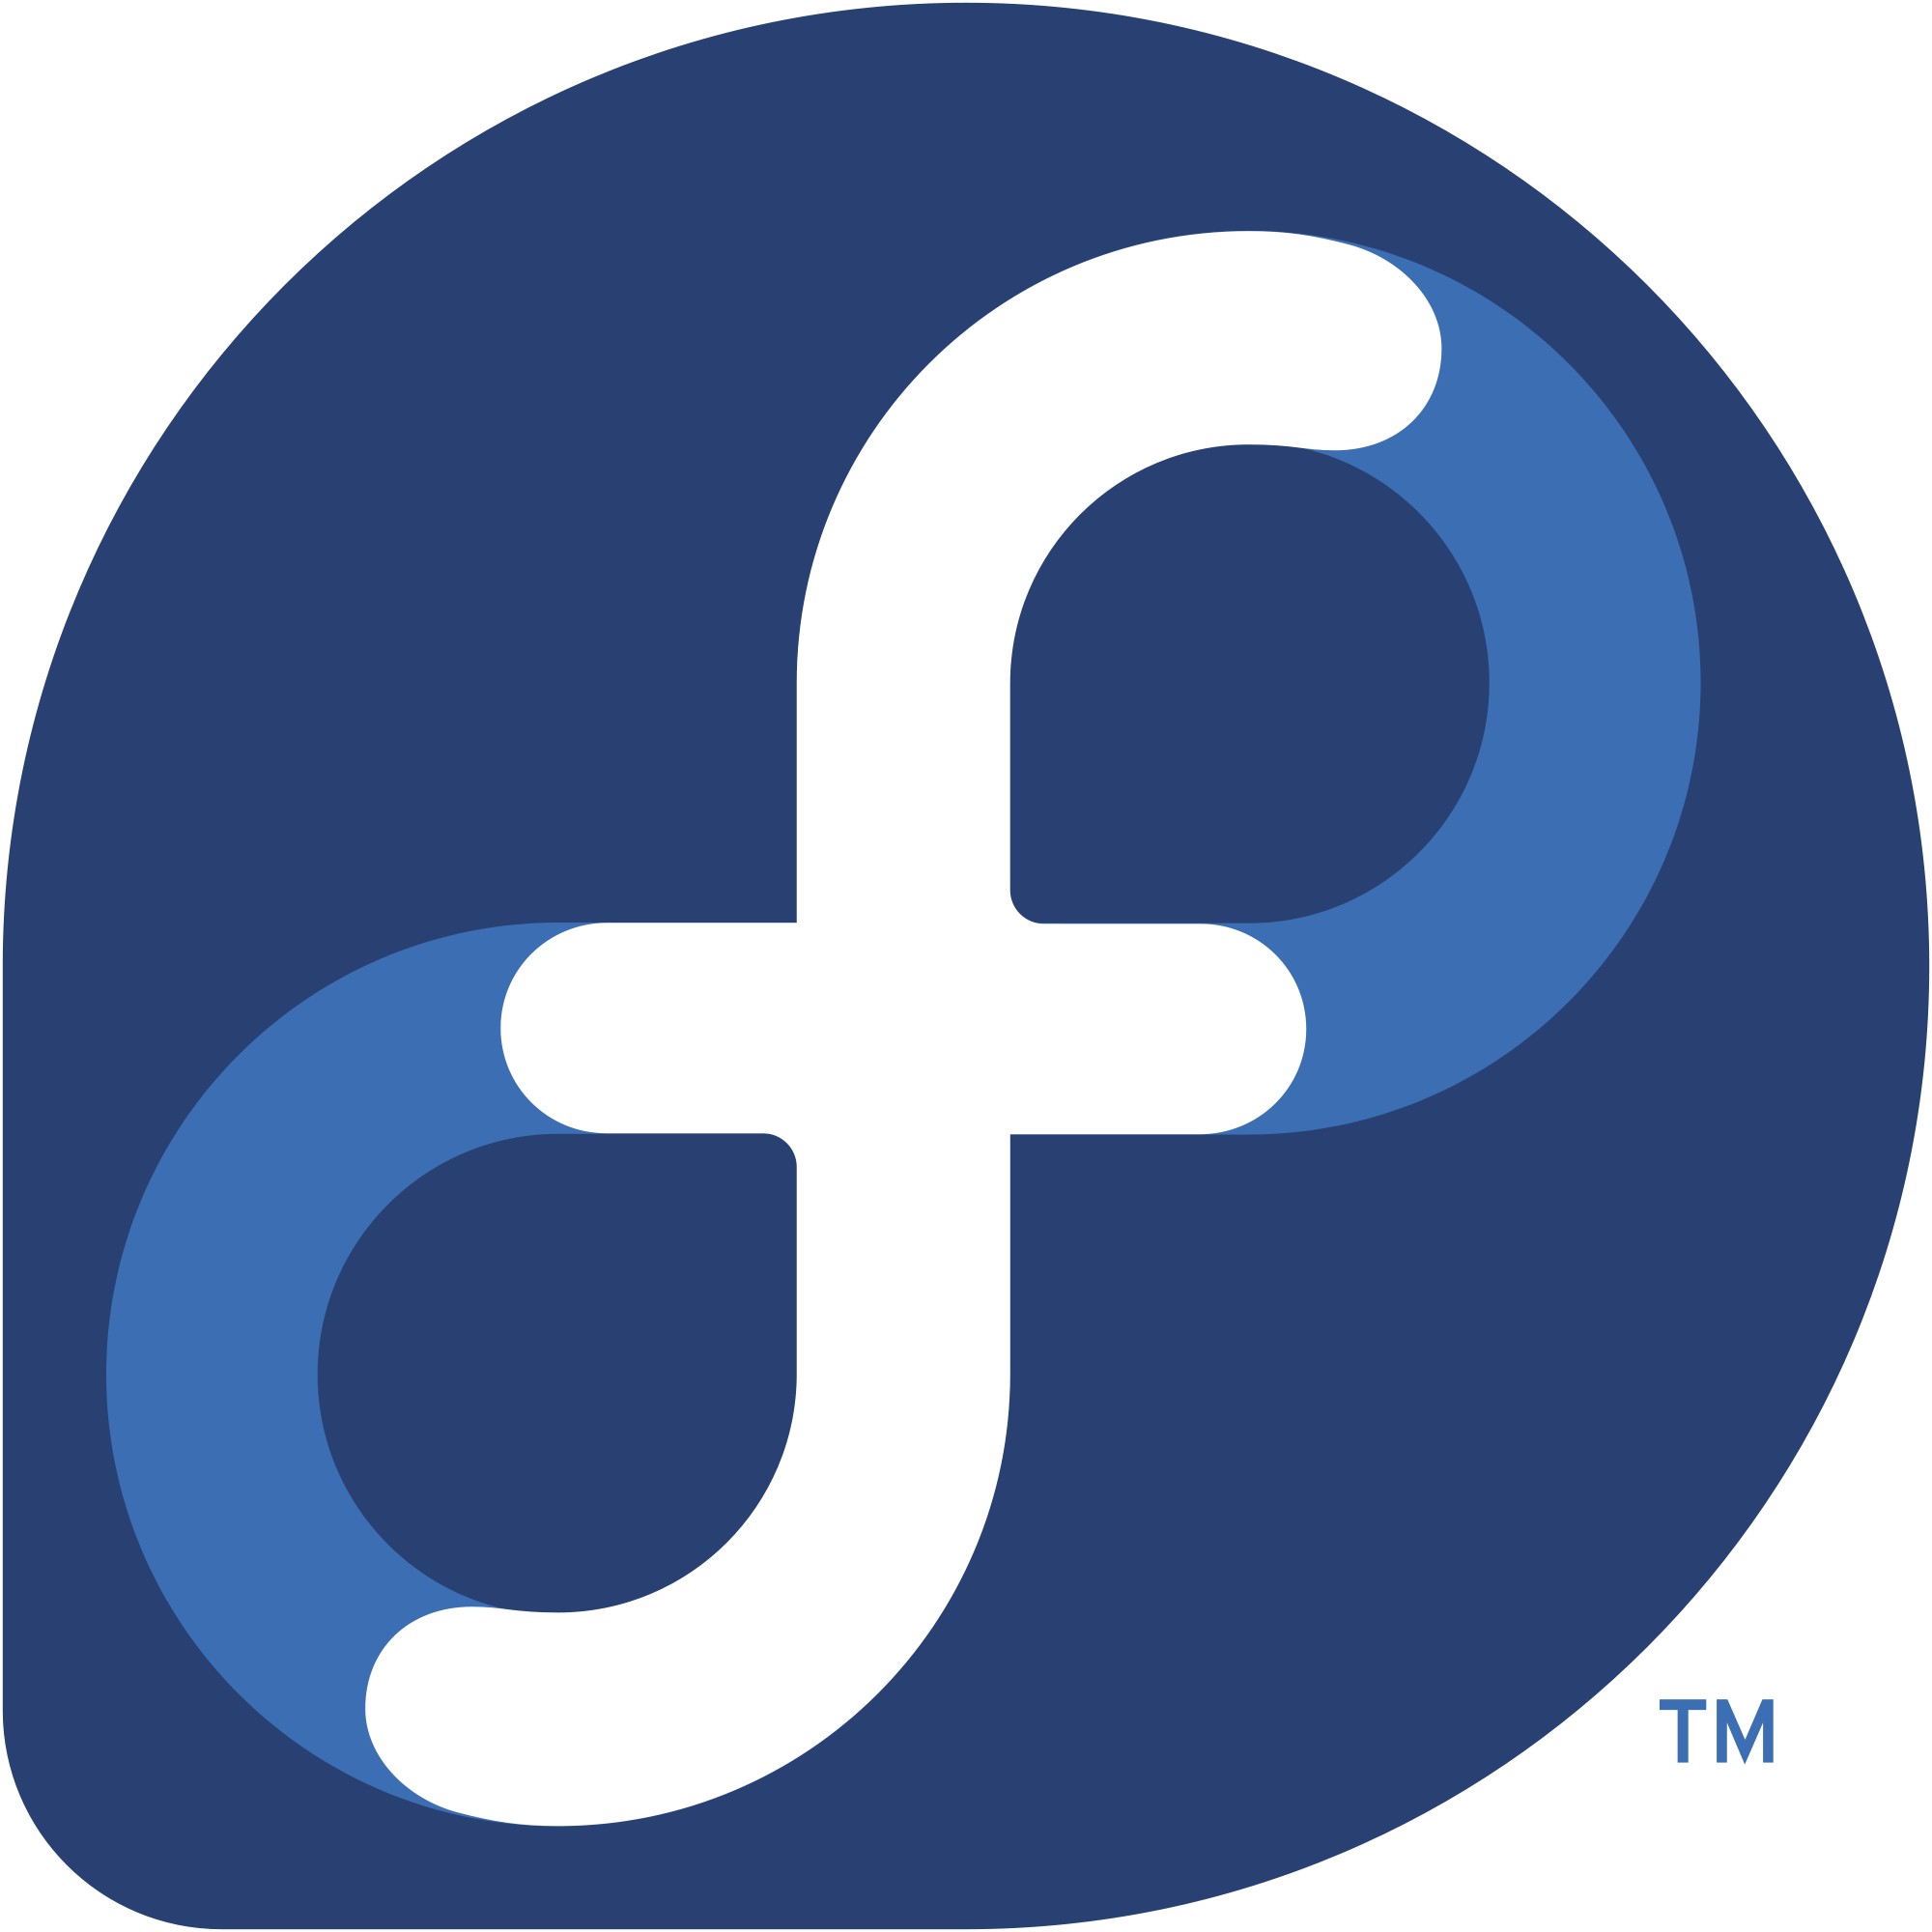 Fedora Logo - File:Fedora logo.svg - Wikimedia Commons